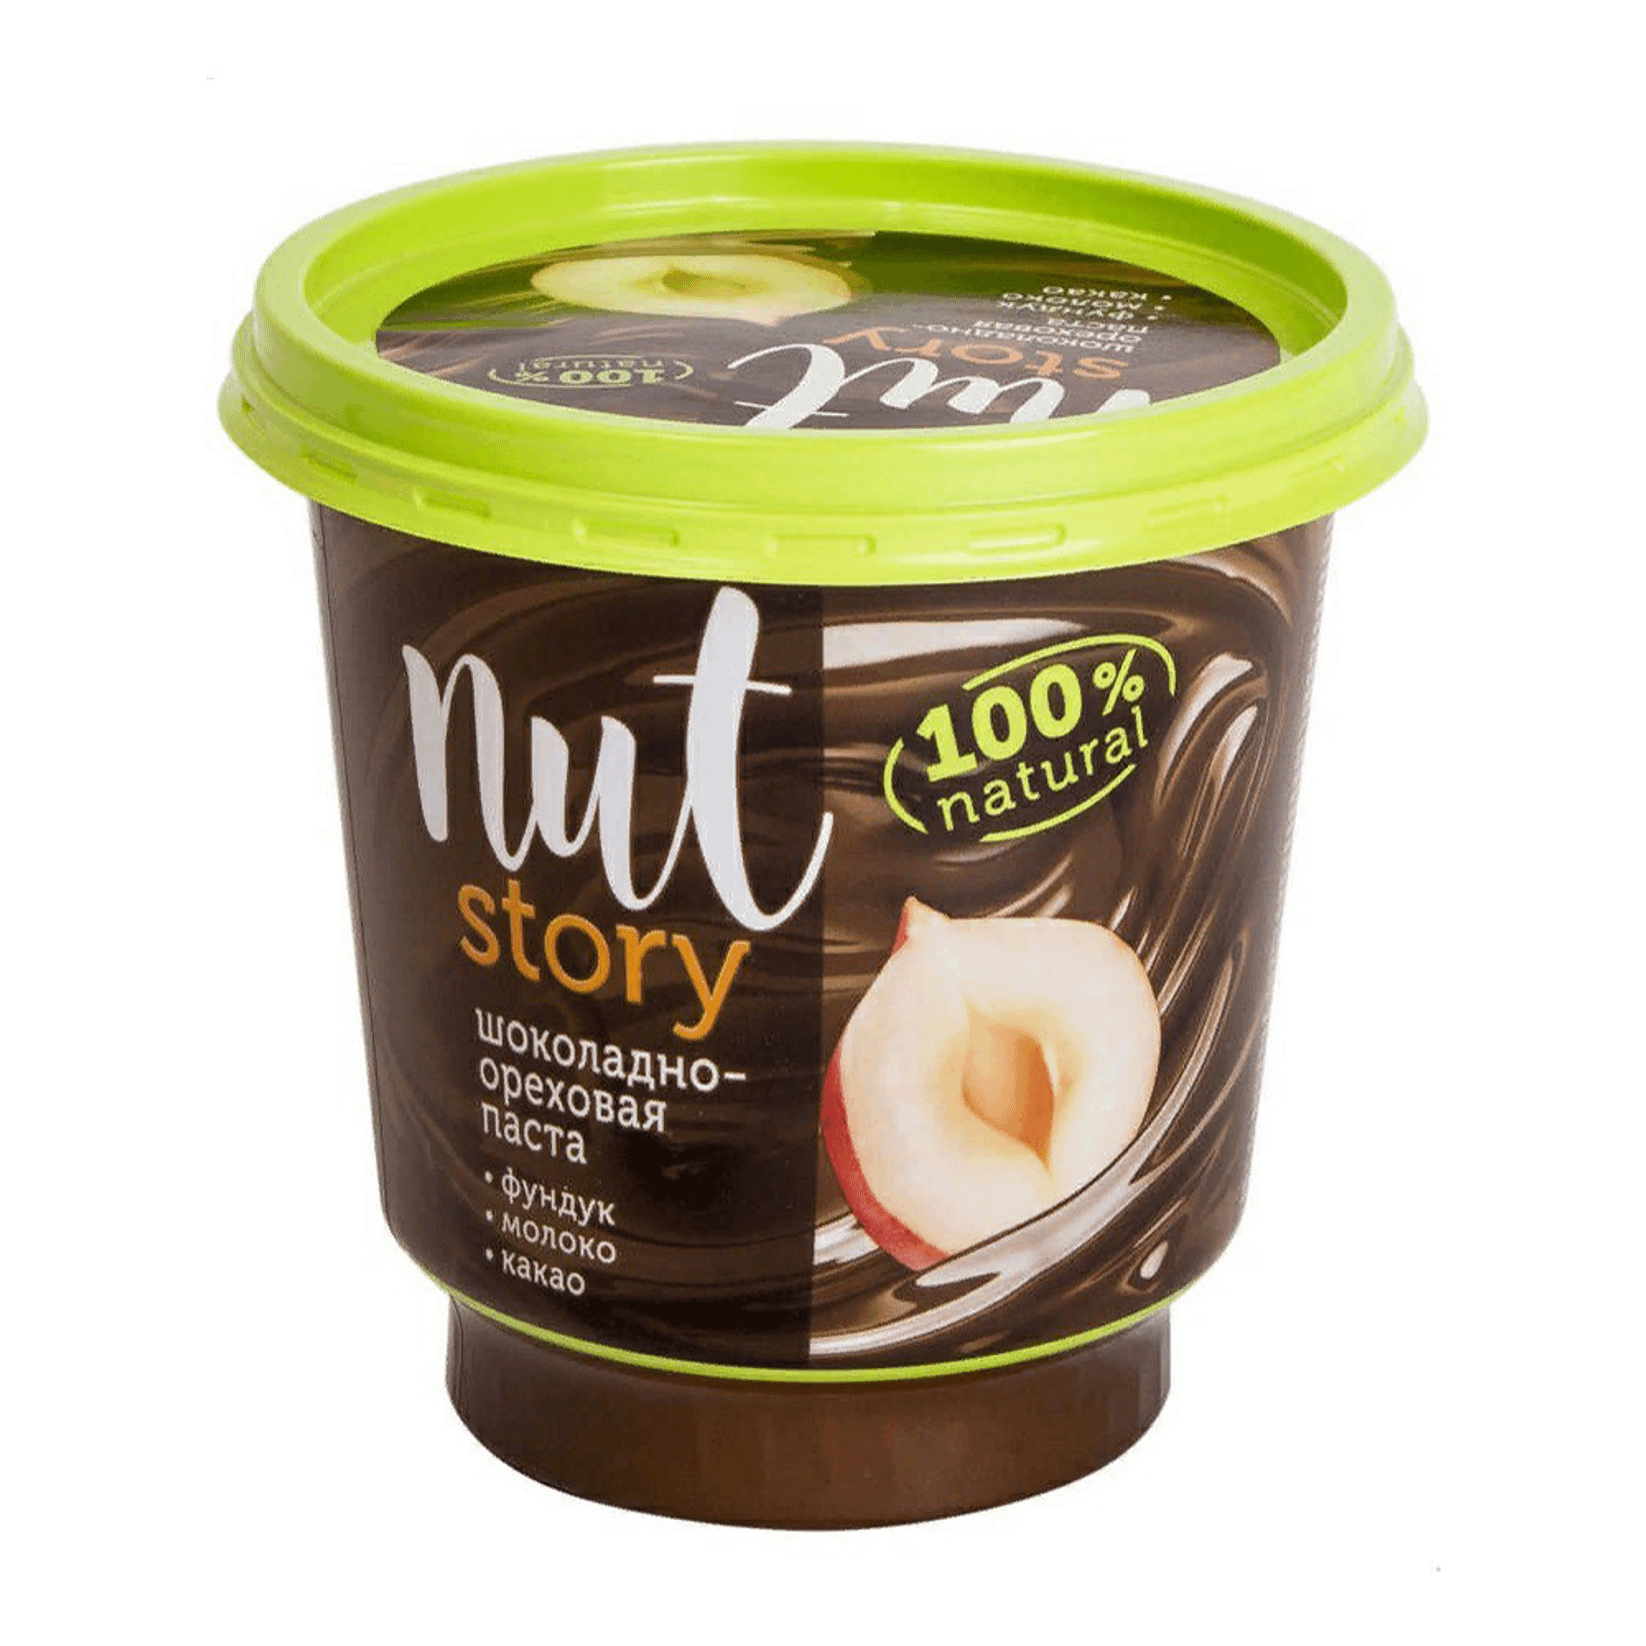 Паста Nut Story шоколадно-ореховая с добавлением какао